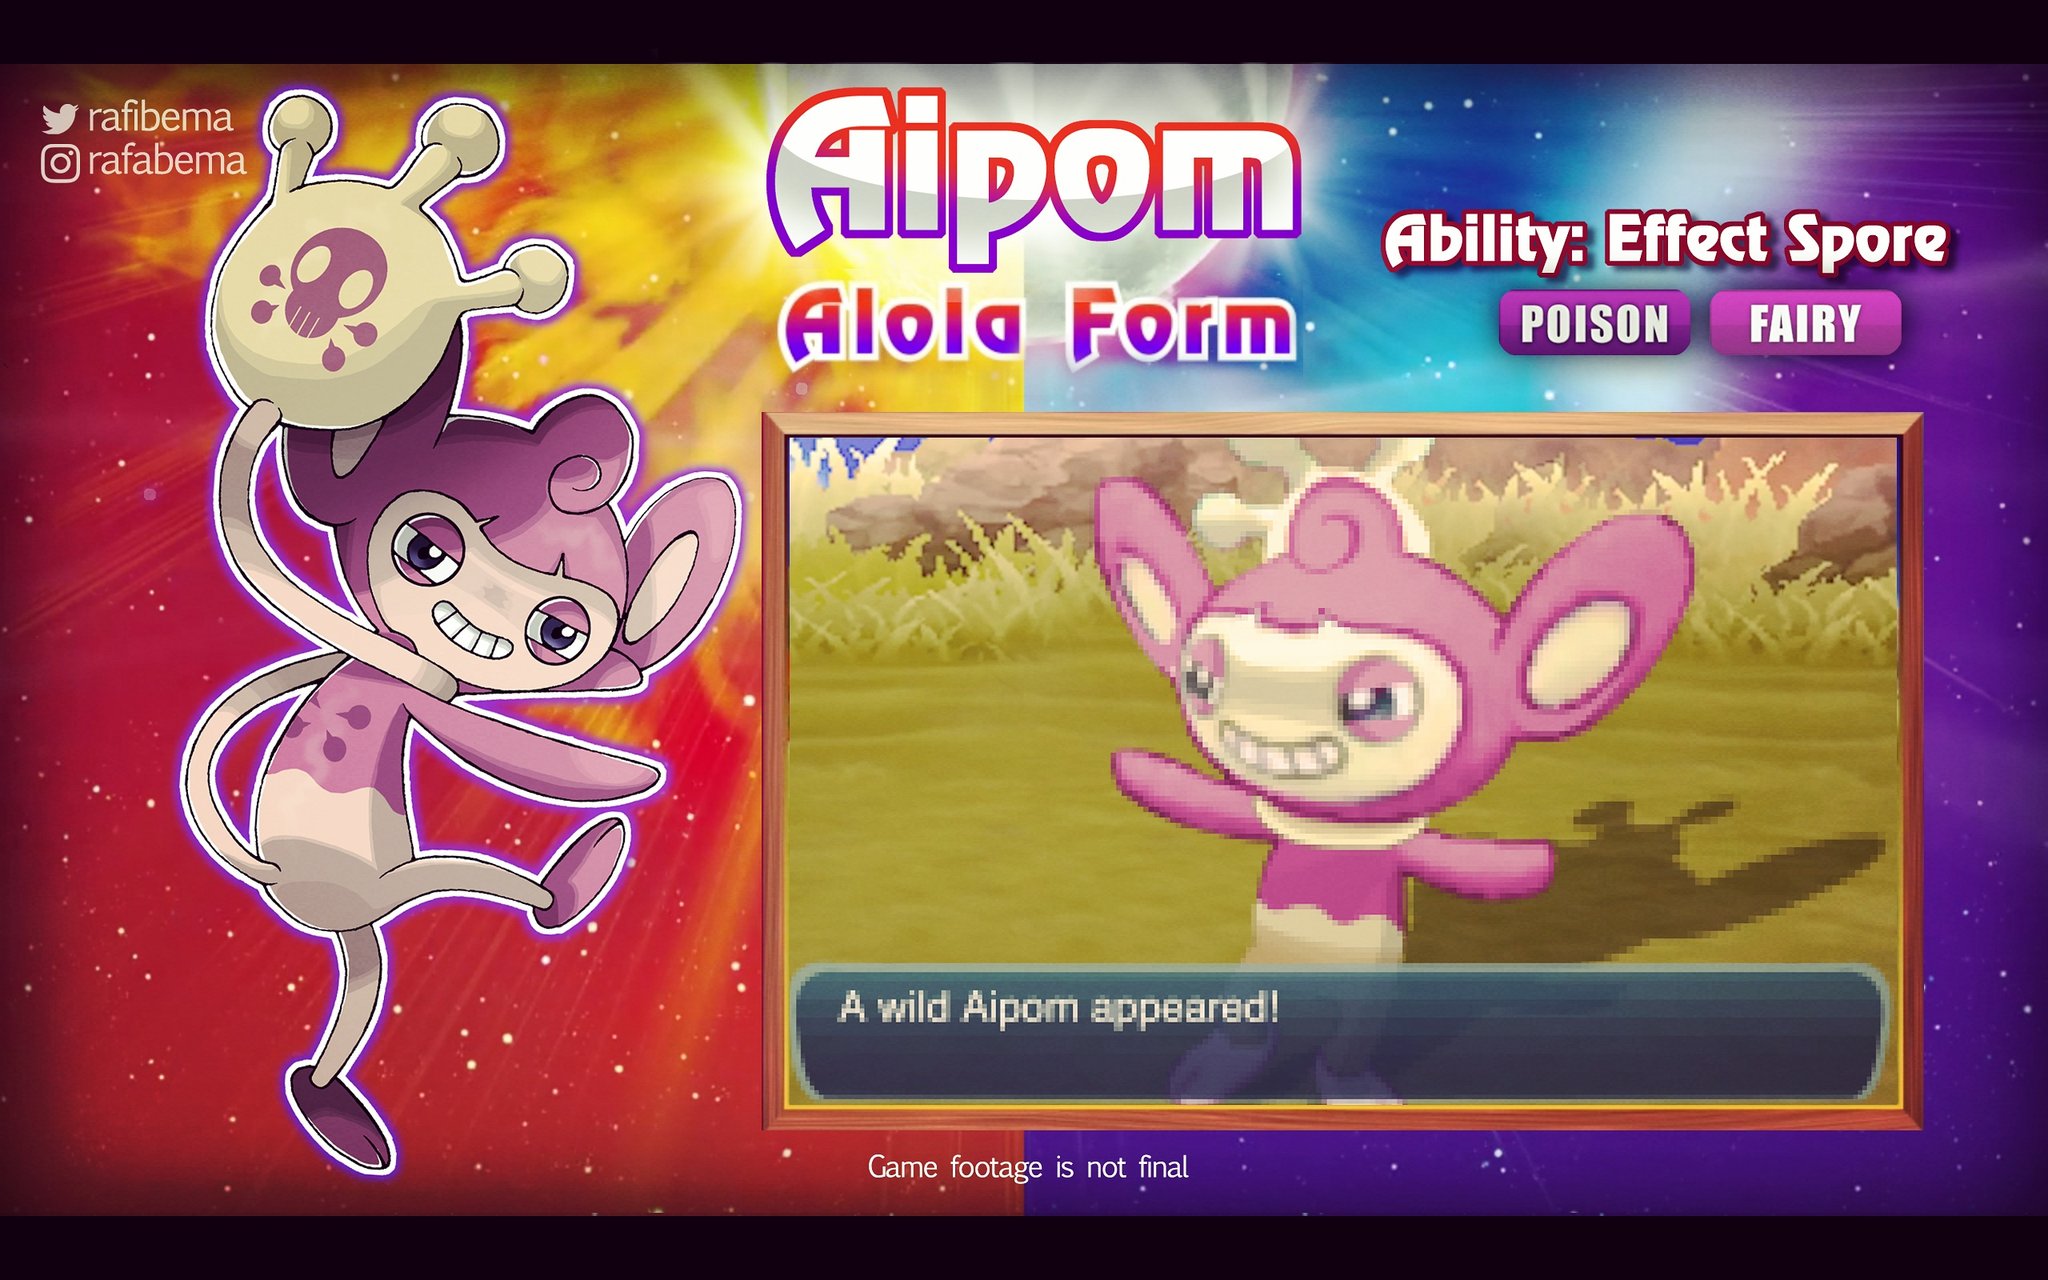 Rafabema on X: Aipom Alola Form Revealed! #PokemonSunMoon #pokemonsolyluna  #pokemon #pokemongo #aipom #alolaform #nintendo #pkmn   / X